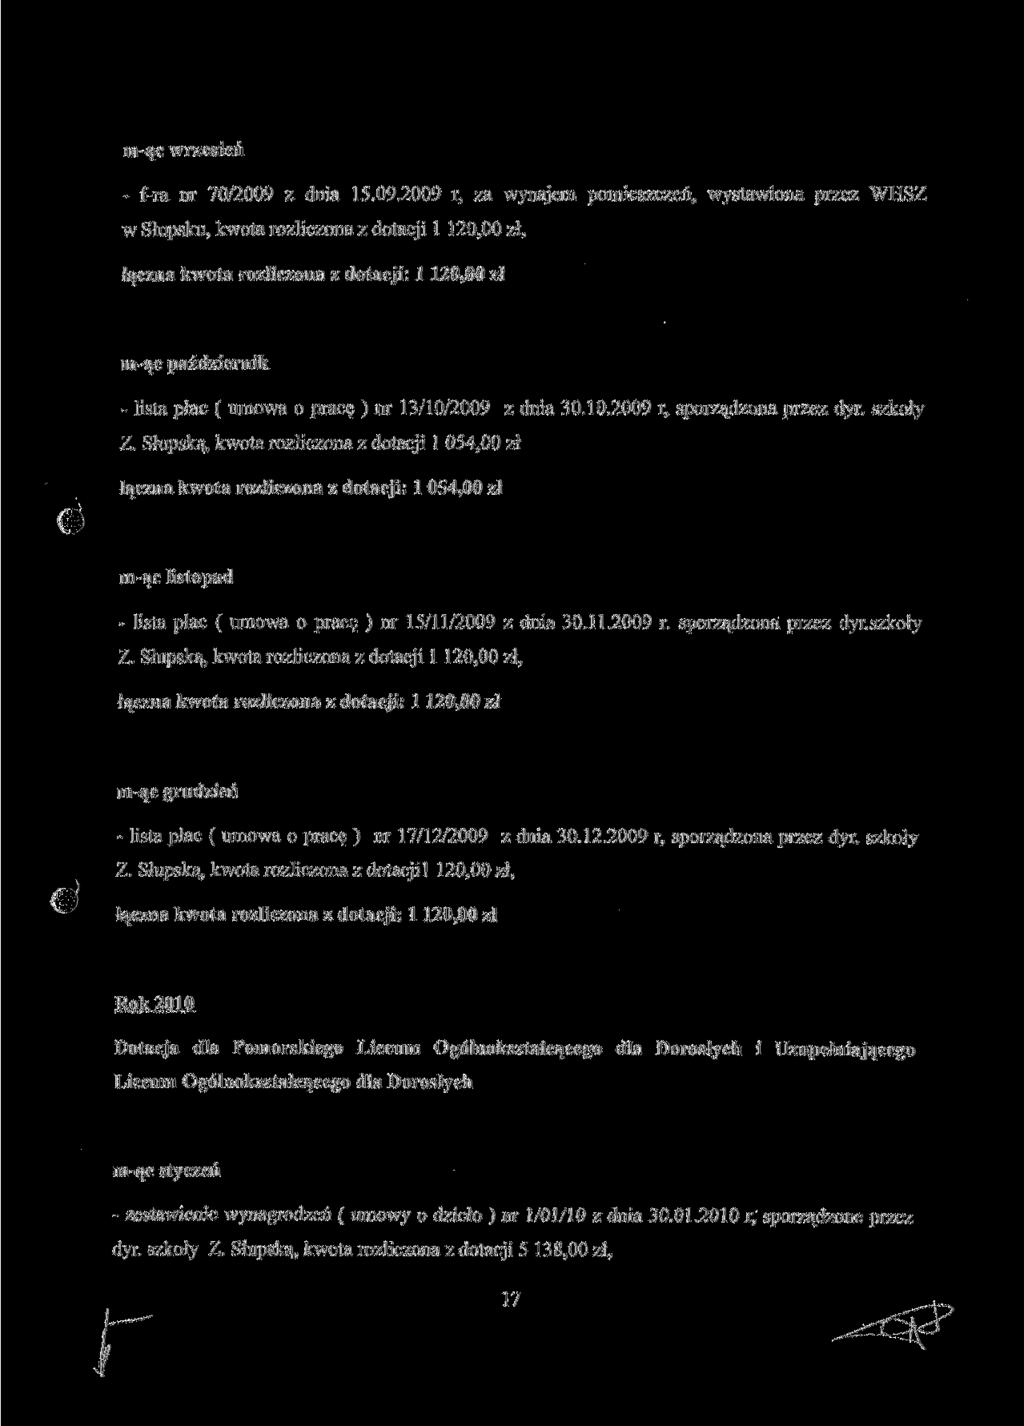 mąc wrzesień fra nr 70/2009 z dnia 15.09.2009 r, za wynajem pomieszczeń, wystawiona przez WHSZ w Słupsku, kwota rozliczona z dotacji l 120,00 zł, łączna kwota rozliczona z dotacji: l 120,00 z!